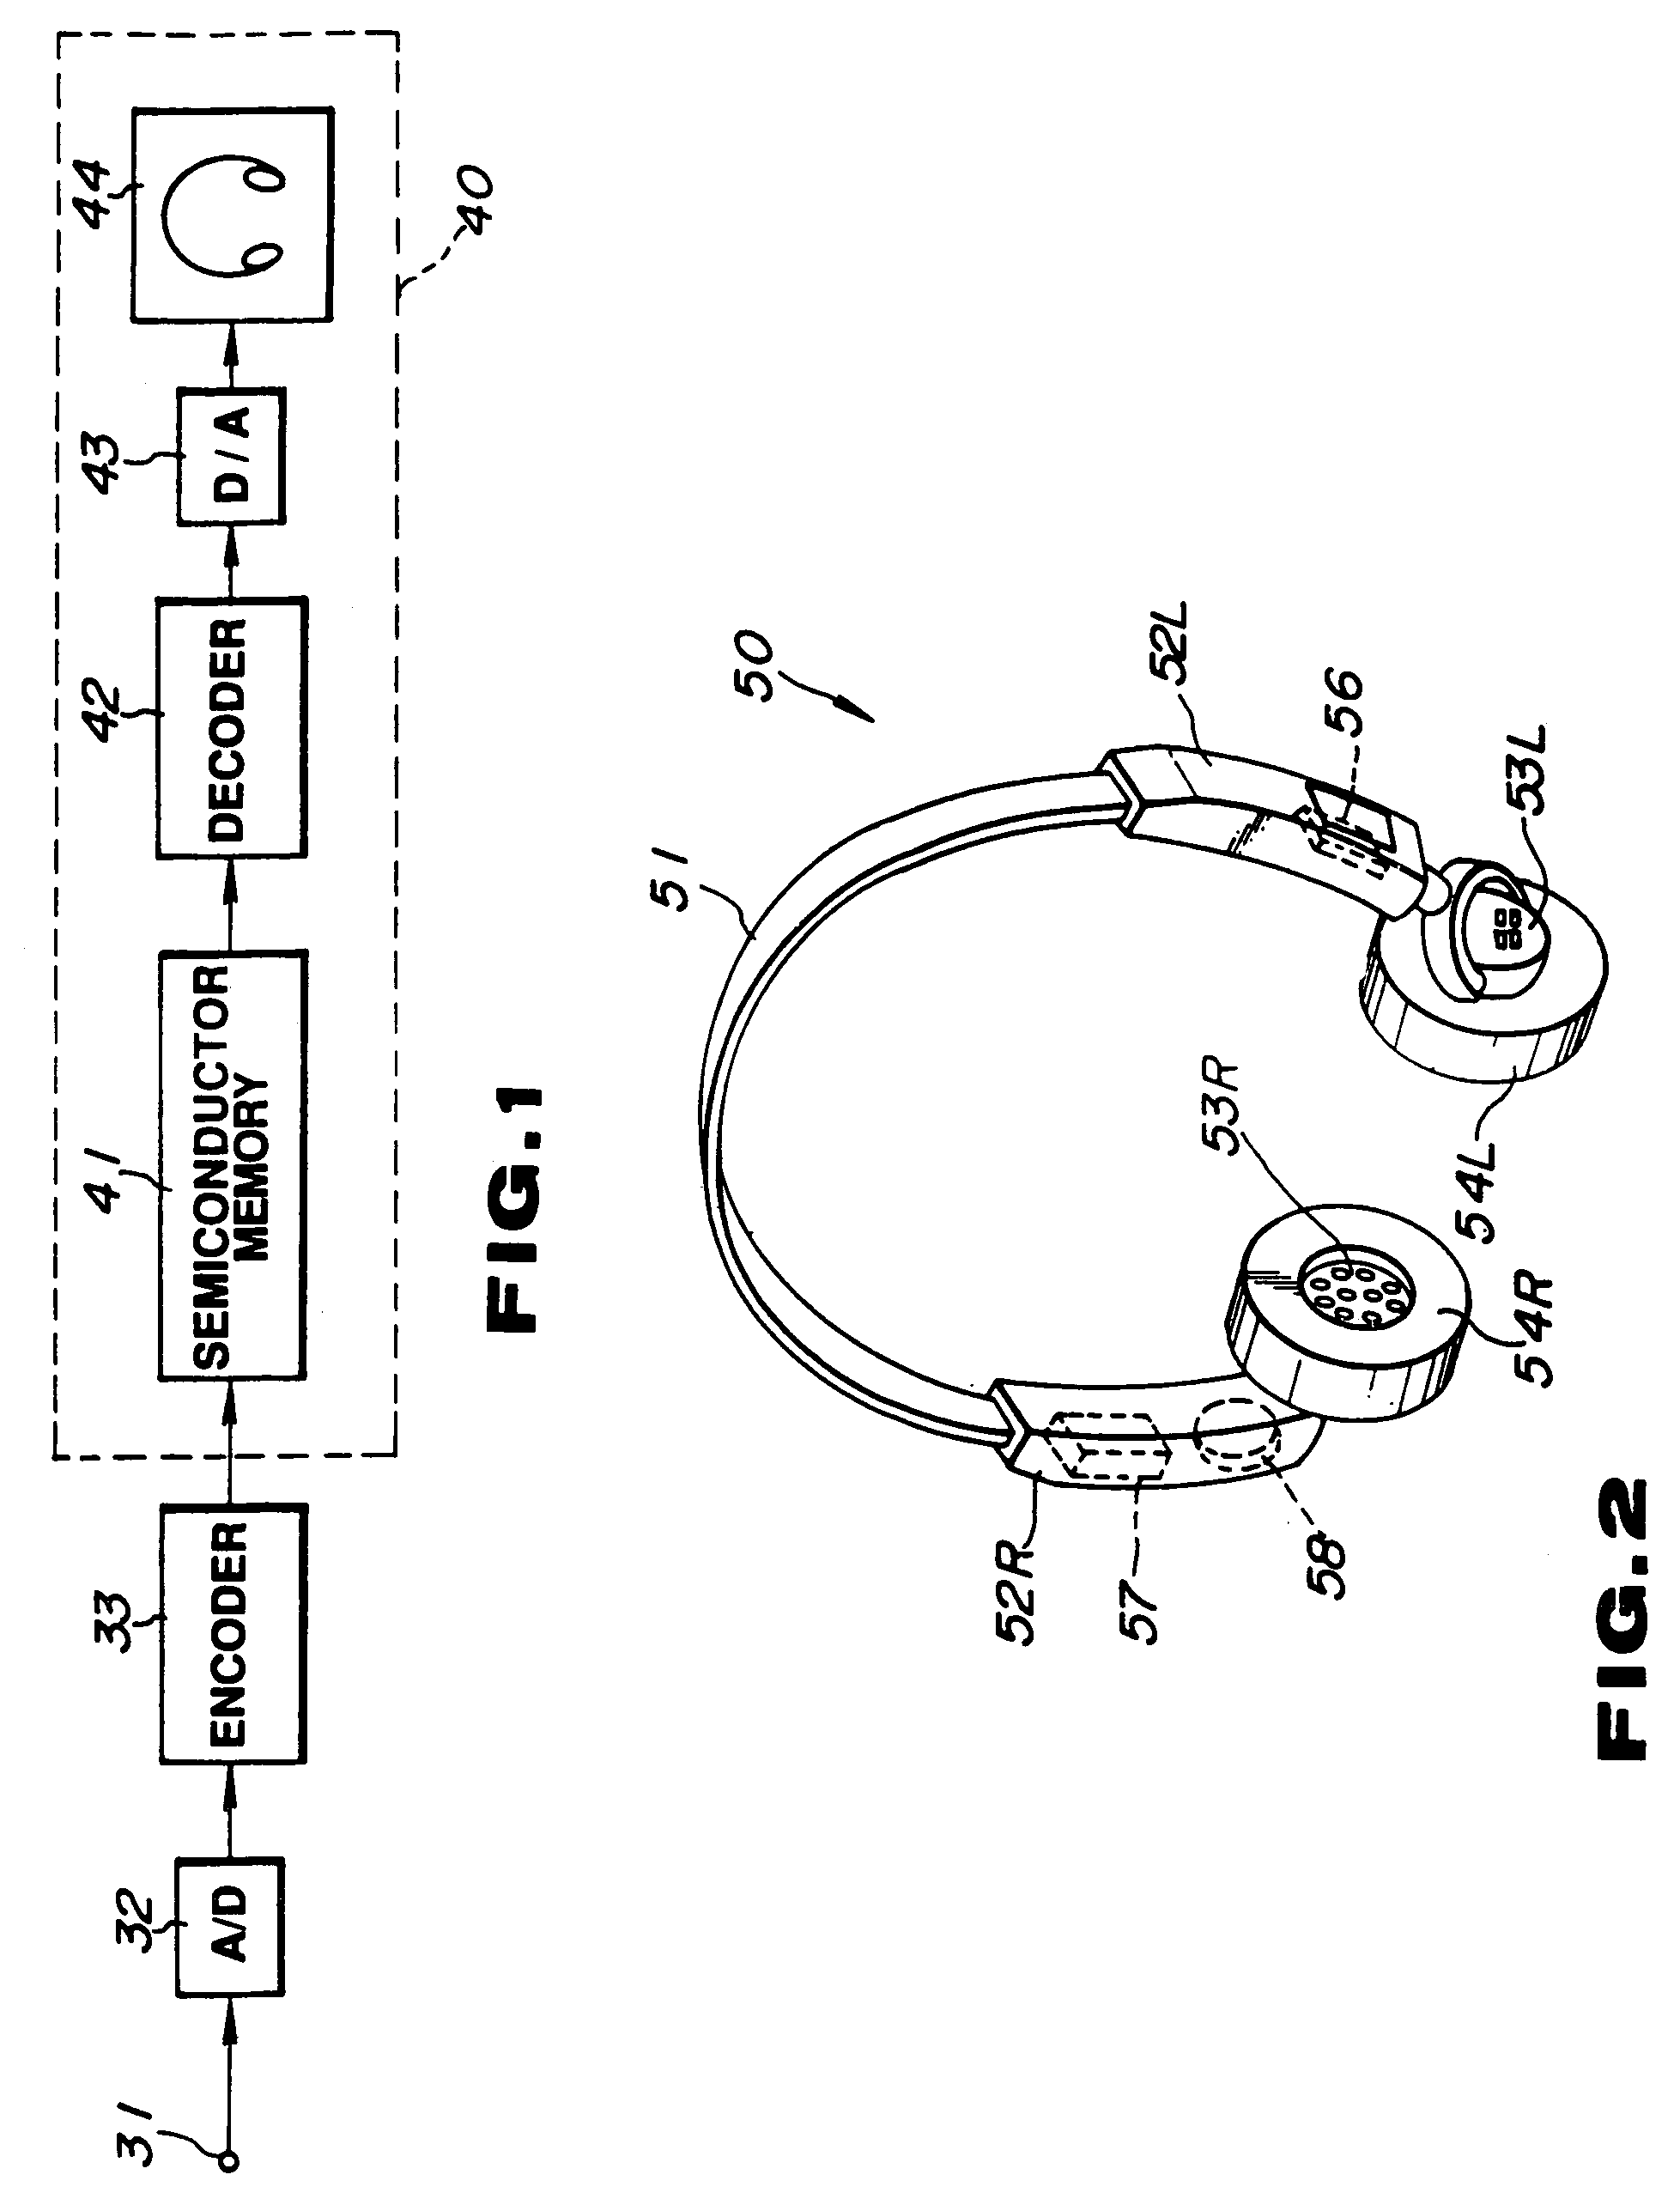 Audio signal reproducing apparatus